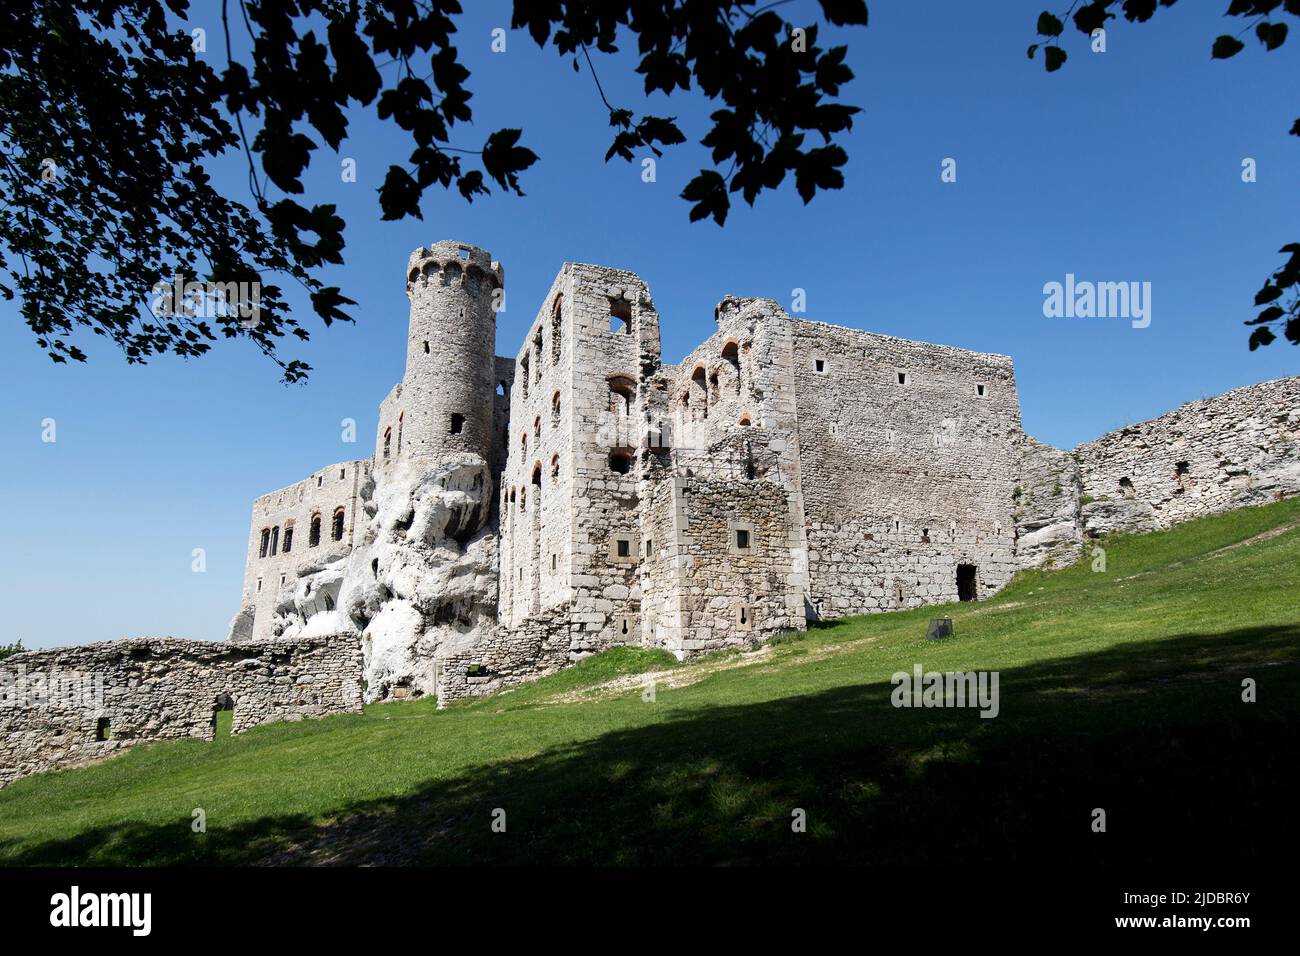 Ruines du château d'Ogrodzieniec en Pologne Banque D'Images